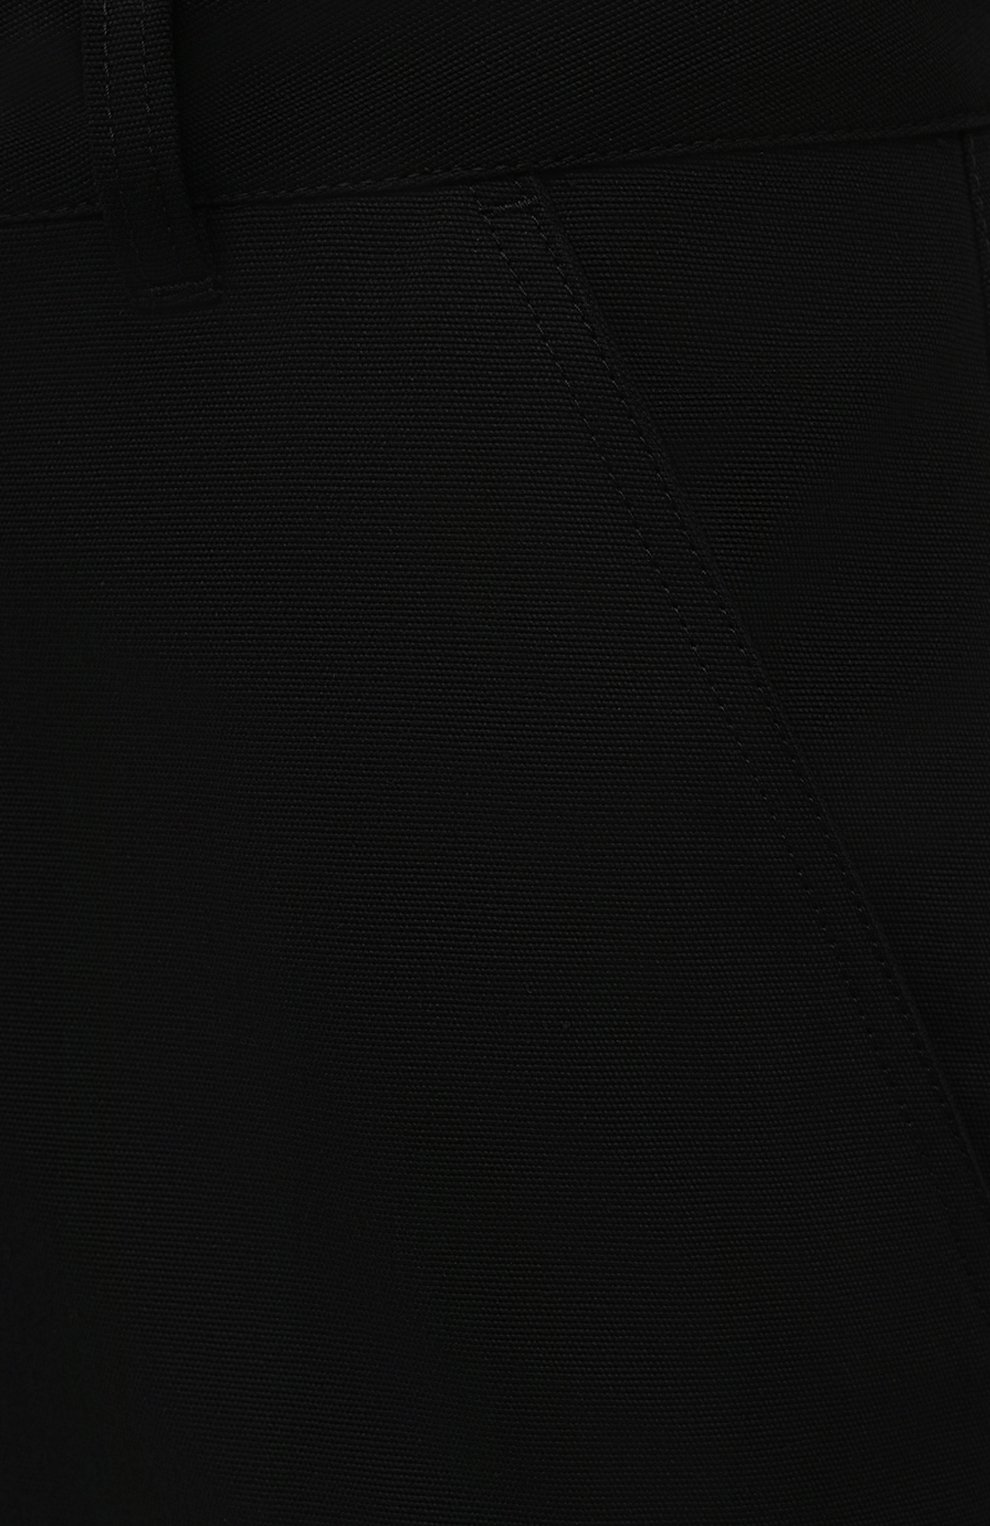 Мужские хлопковые брюки MONCLER черного цвета, арт. G2-091-2A000-11-595D0 | Фото 5 (Длина (брюки, джинсы): Стандартные; Случай: Повседневный; Материал внешний: Хлопок; Стили: Кэжуэл)